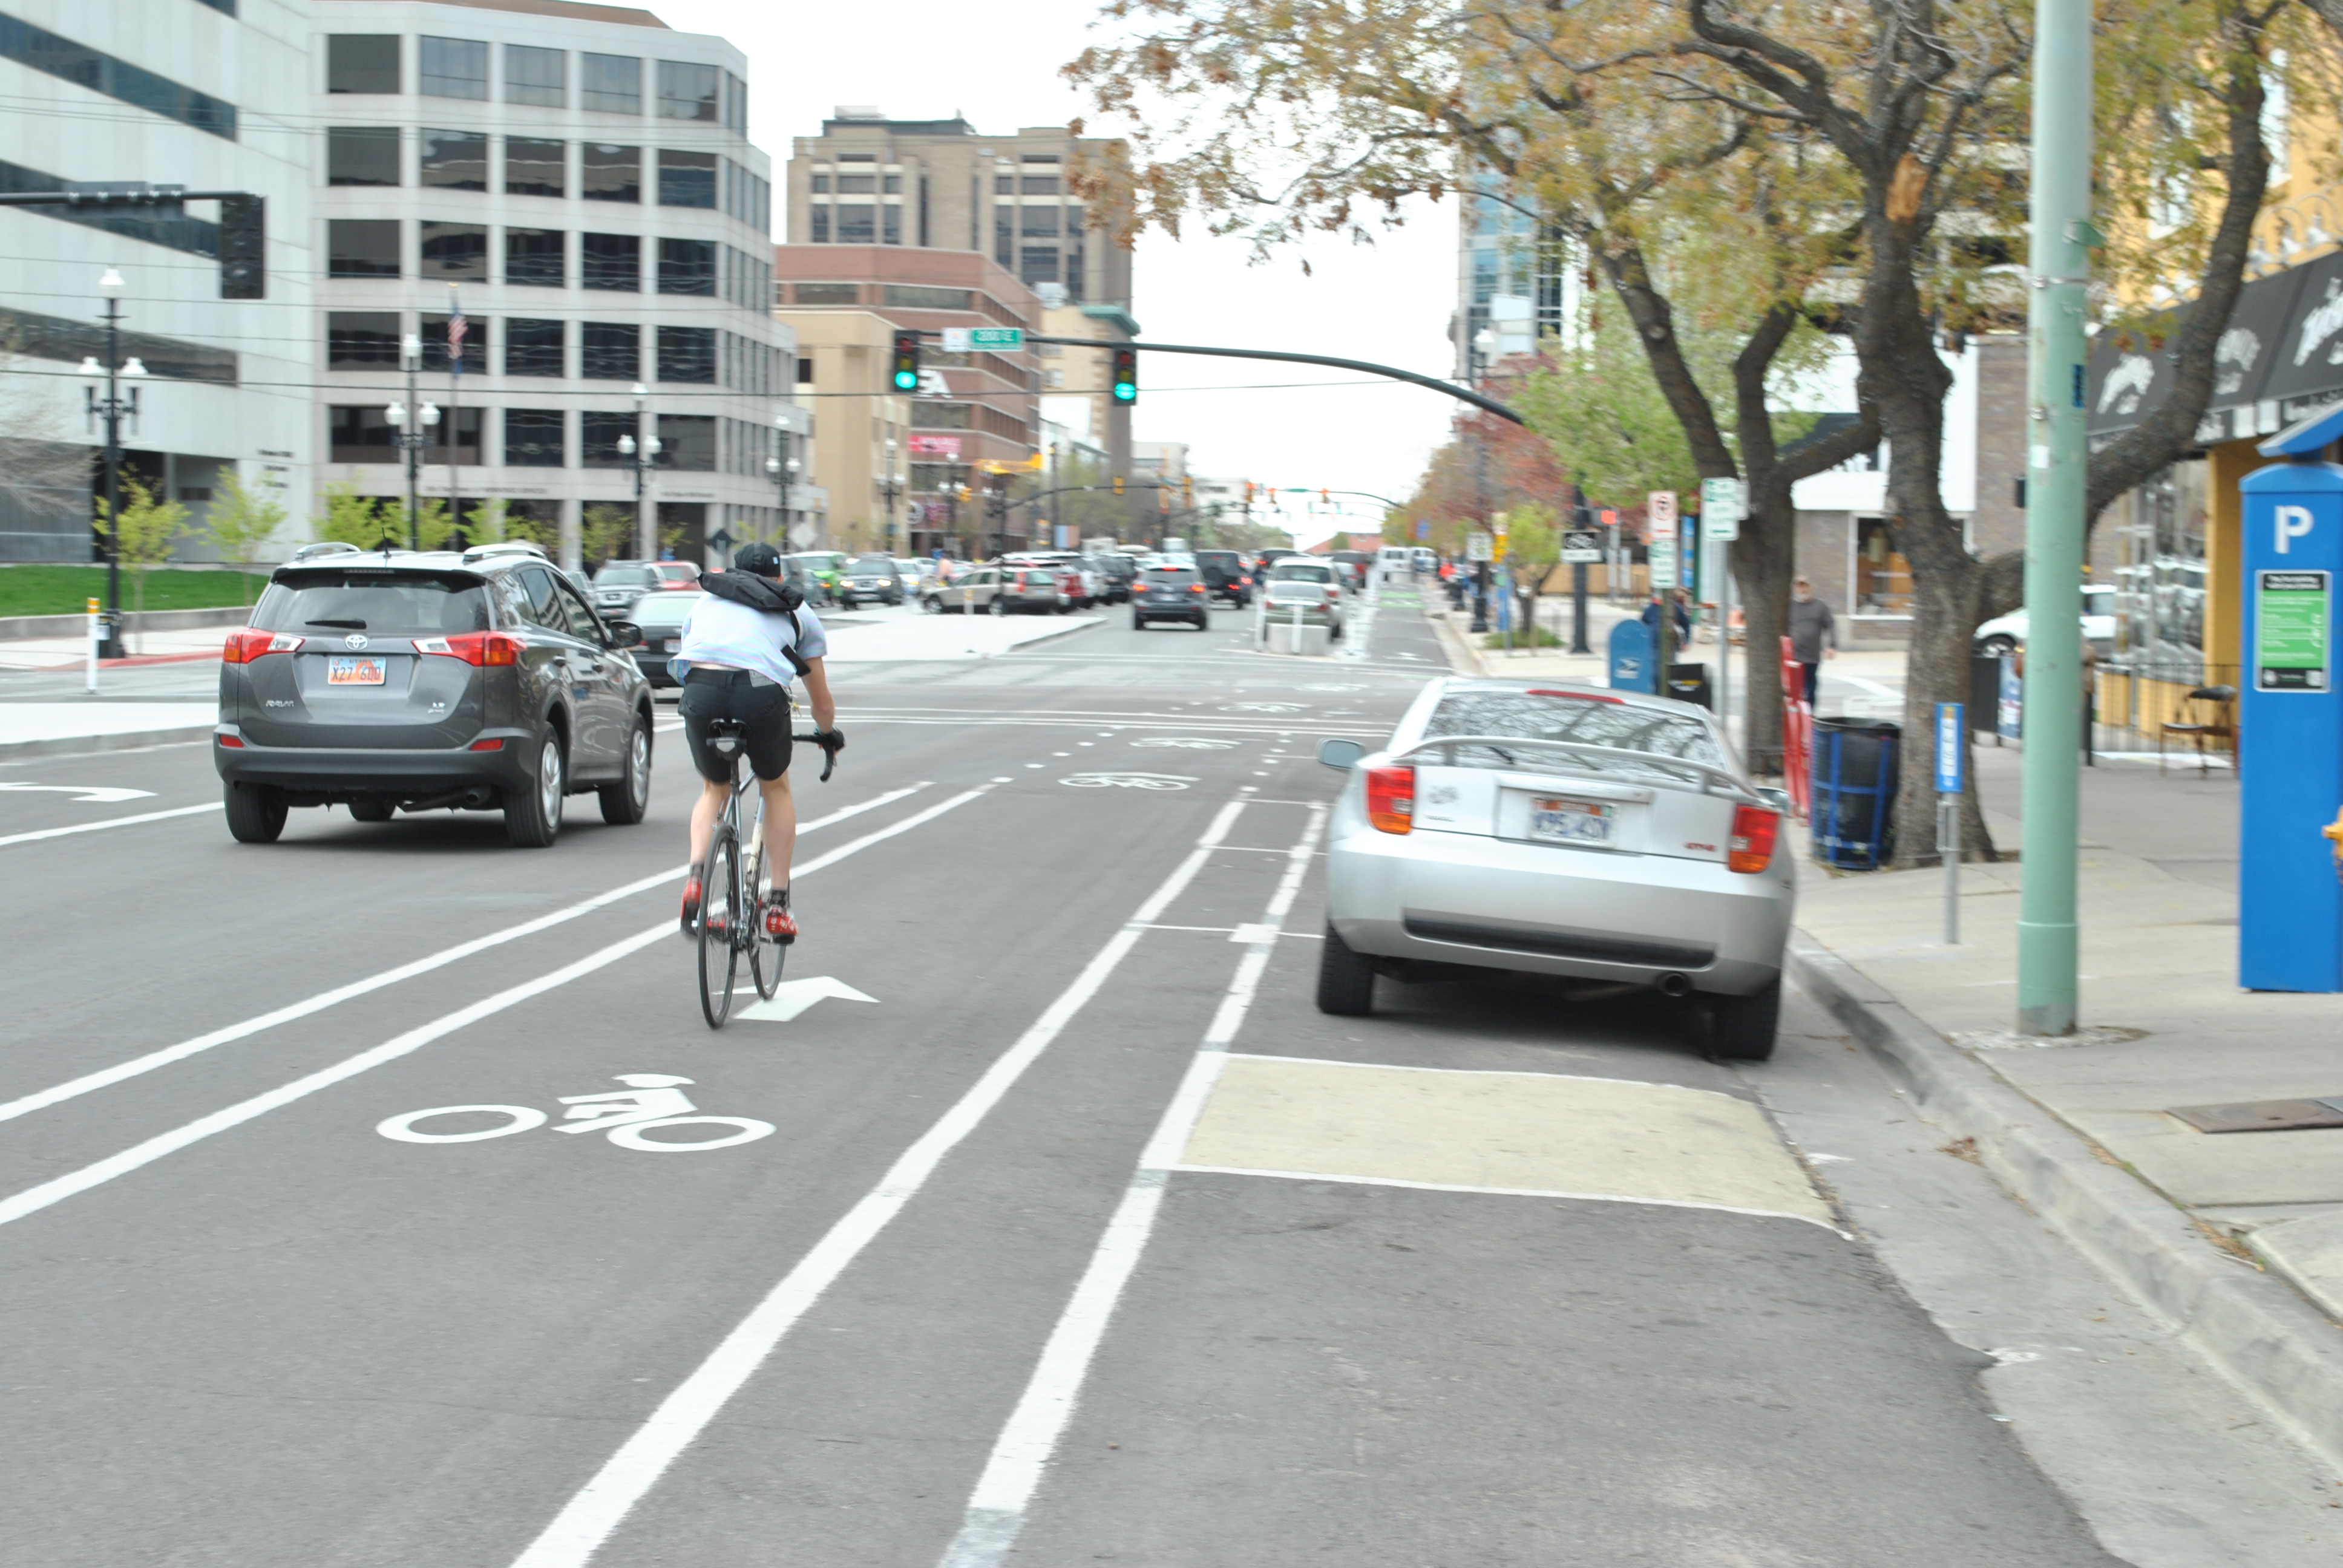 300 South Bikepath: Cyclists Still Use the Sidewalk